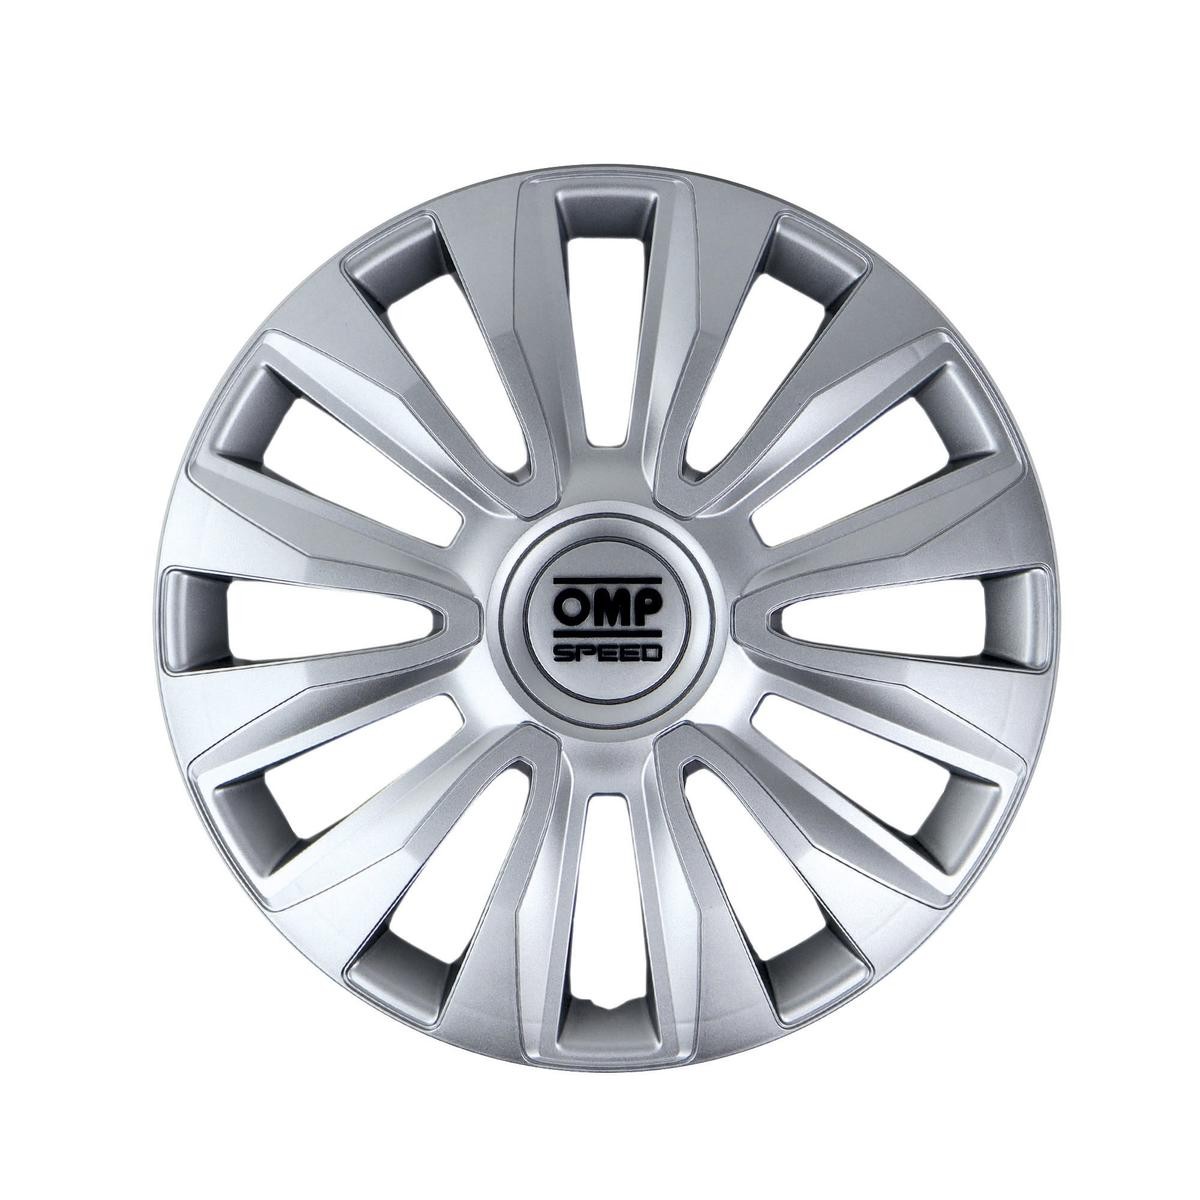 OMP OMPS07011402 Car wheel trims VW Golf 4 (1J1) 14 Inch silver